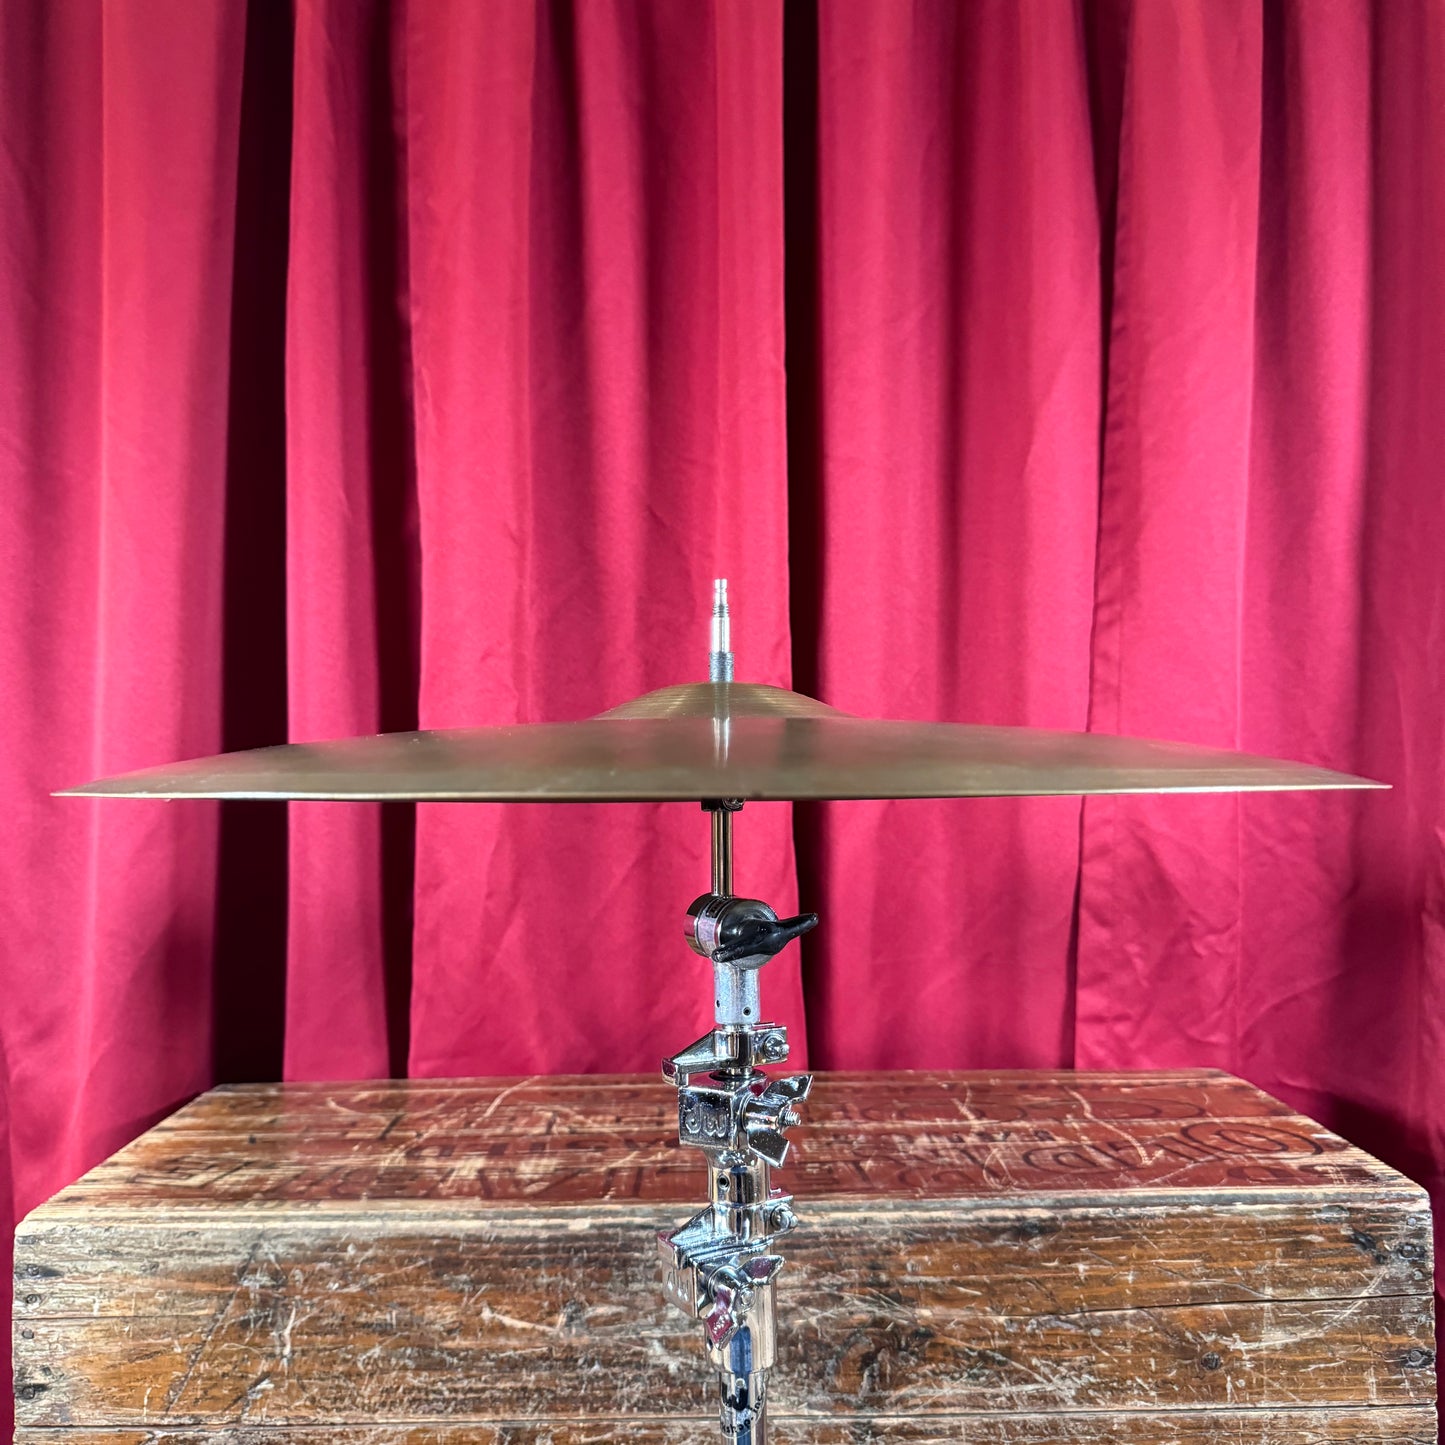 20" Zildjian A 1960s Ride Cymbal 2198g *Video Demo*